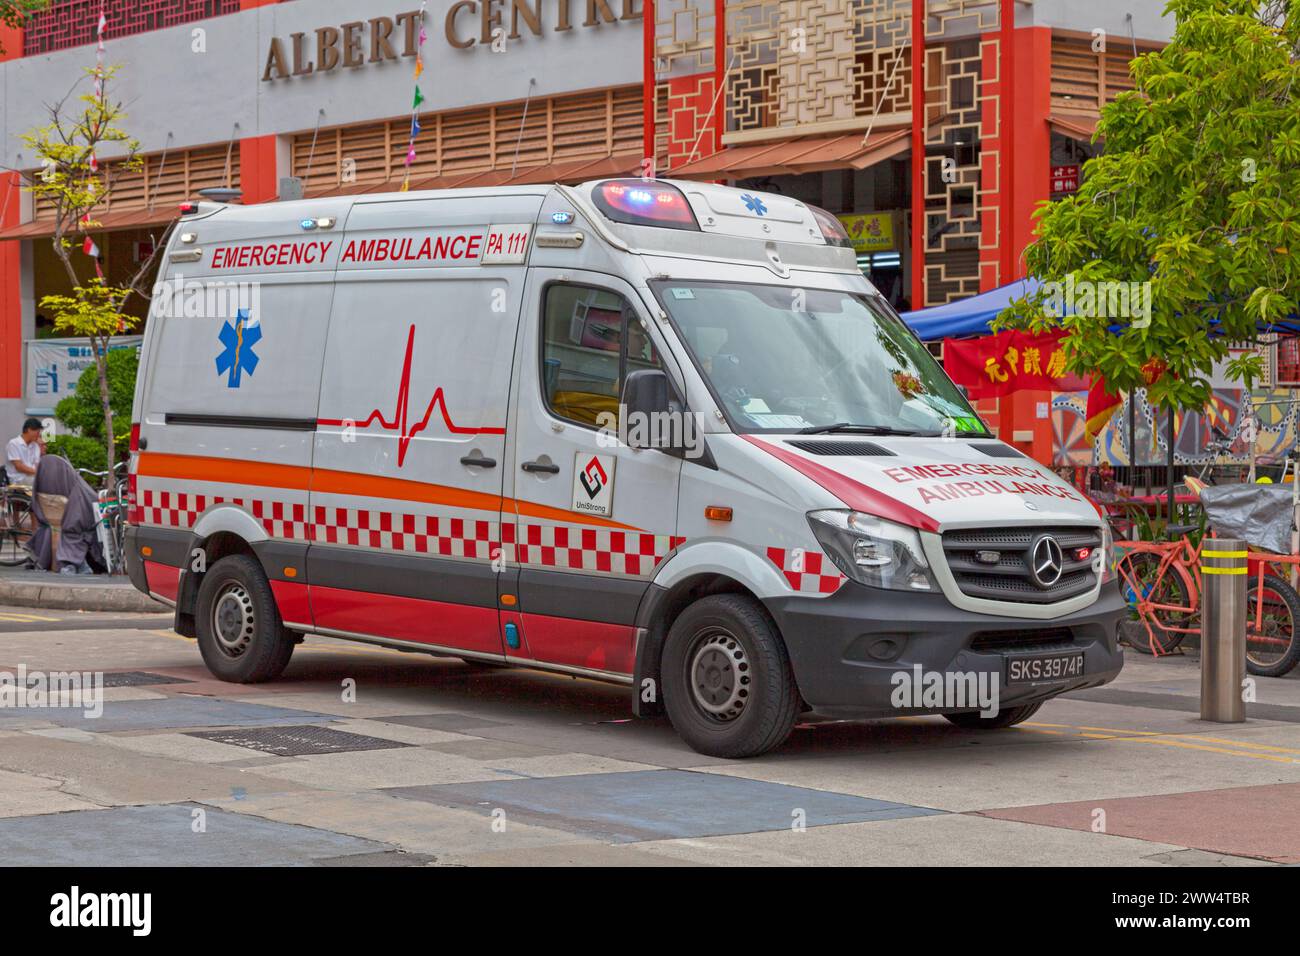 Bugis, Singapour - 03 septembre 2018 : ambulance d'urgence stationnée à côté du Centre Albert. Banque D'Images